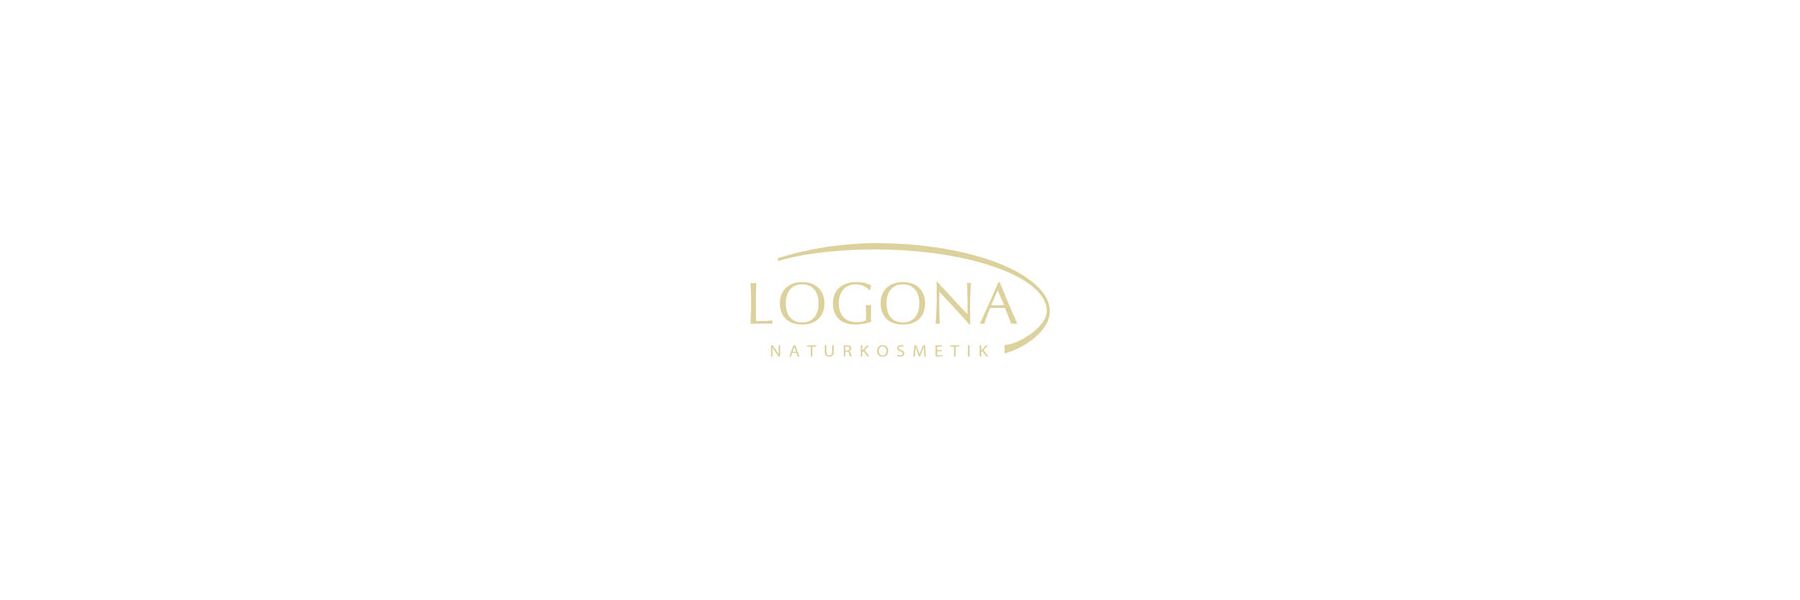 Seit 1978 setzt Logona auf die sanfte Kraft der...